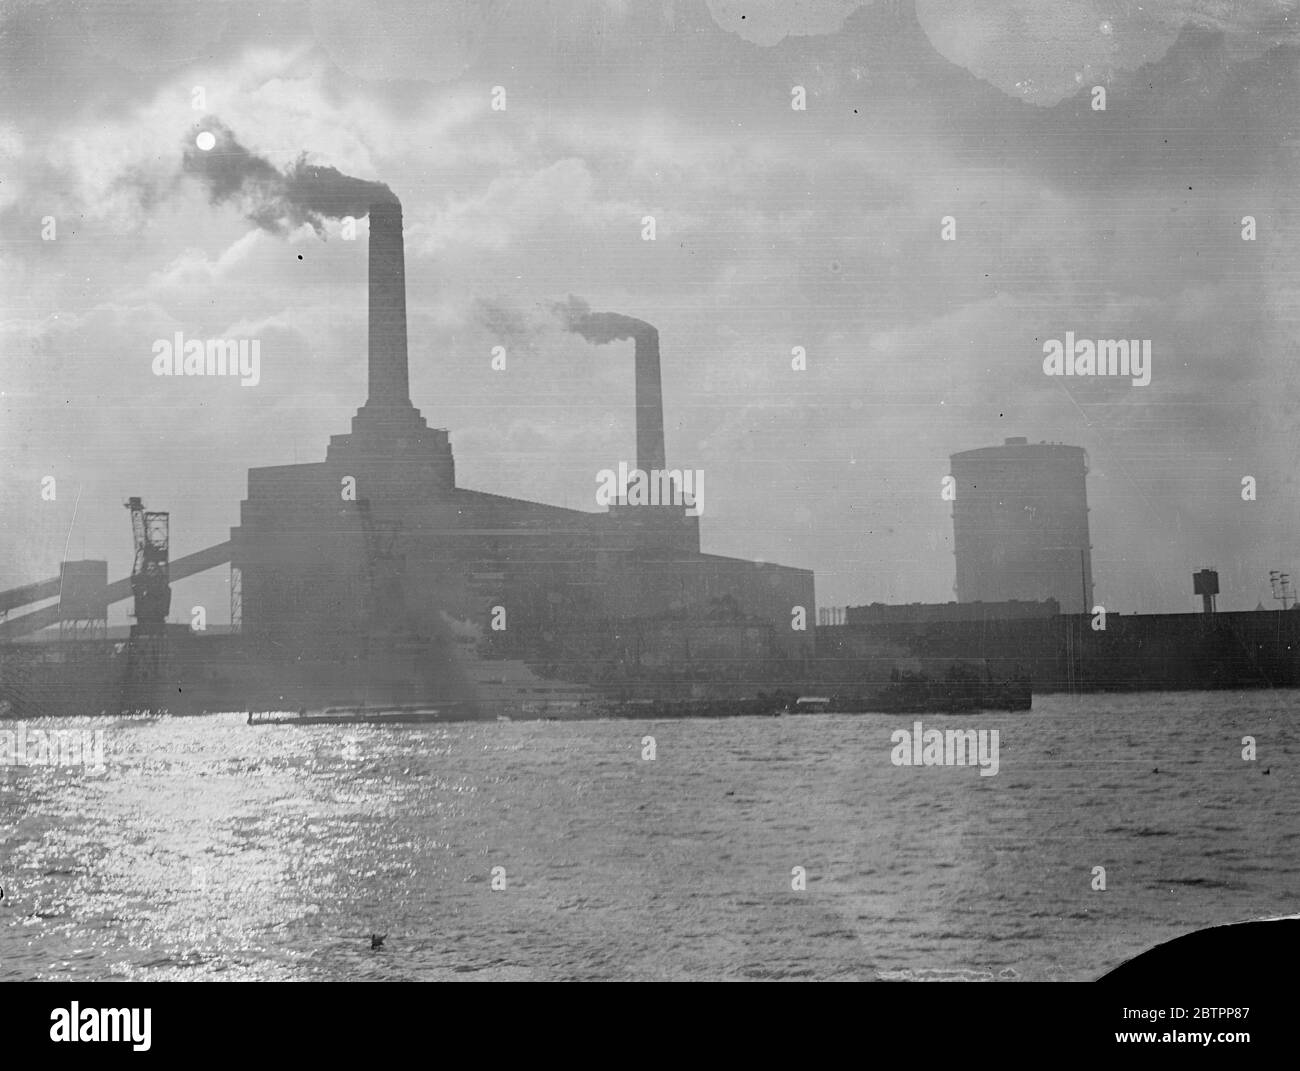 Dunkle Riesen der Macht!. Die hoch aufragenden, anmutigen Stapel des Battersea Power Station mit Rauchschlangen, die sich vor einem bewölkten Himmel erheben, Kraniche und Schlepper, die auf dem sonnenglitzernden Fluss vorbei pusten, vermitteln einen Eindruck von der 'industriellen Themse', der Quelle von Londons Macht und Reichtum. 28. Januar 1938 Stockfoto